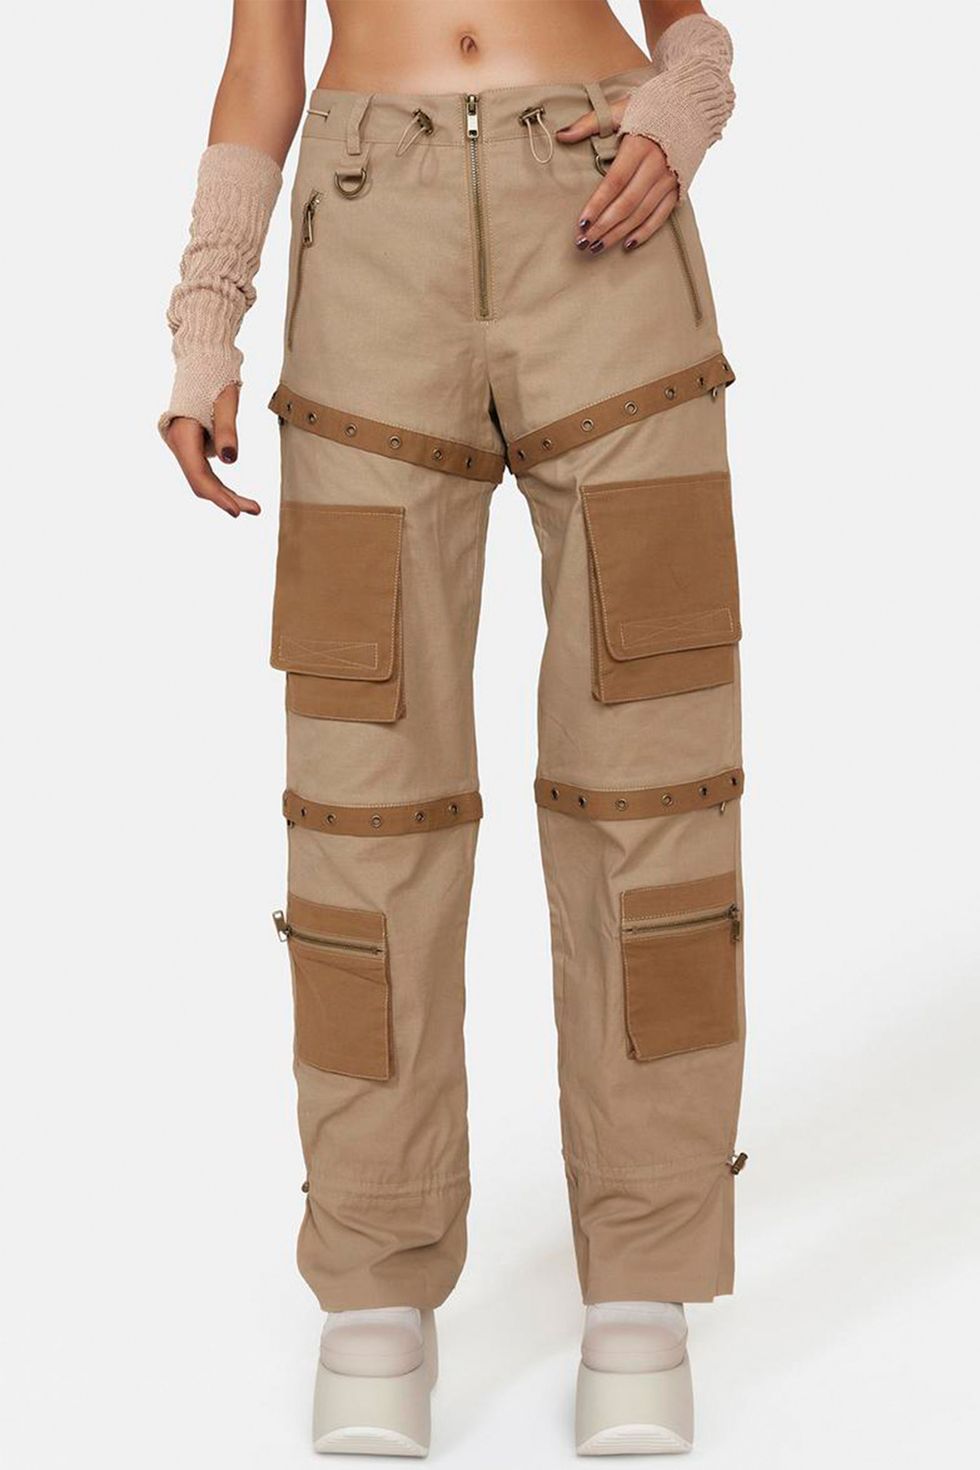 Women's Cargo Pants